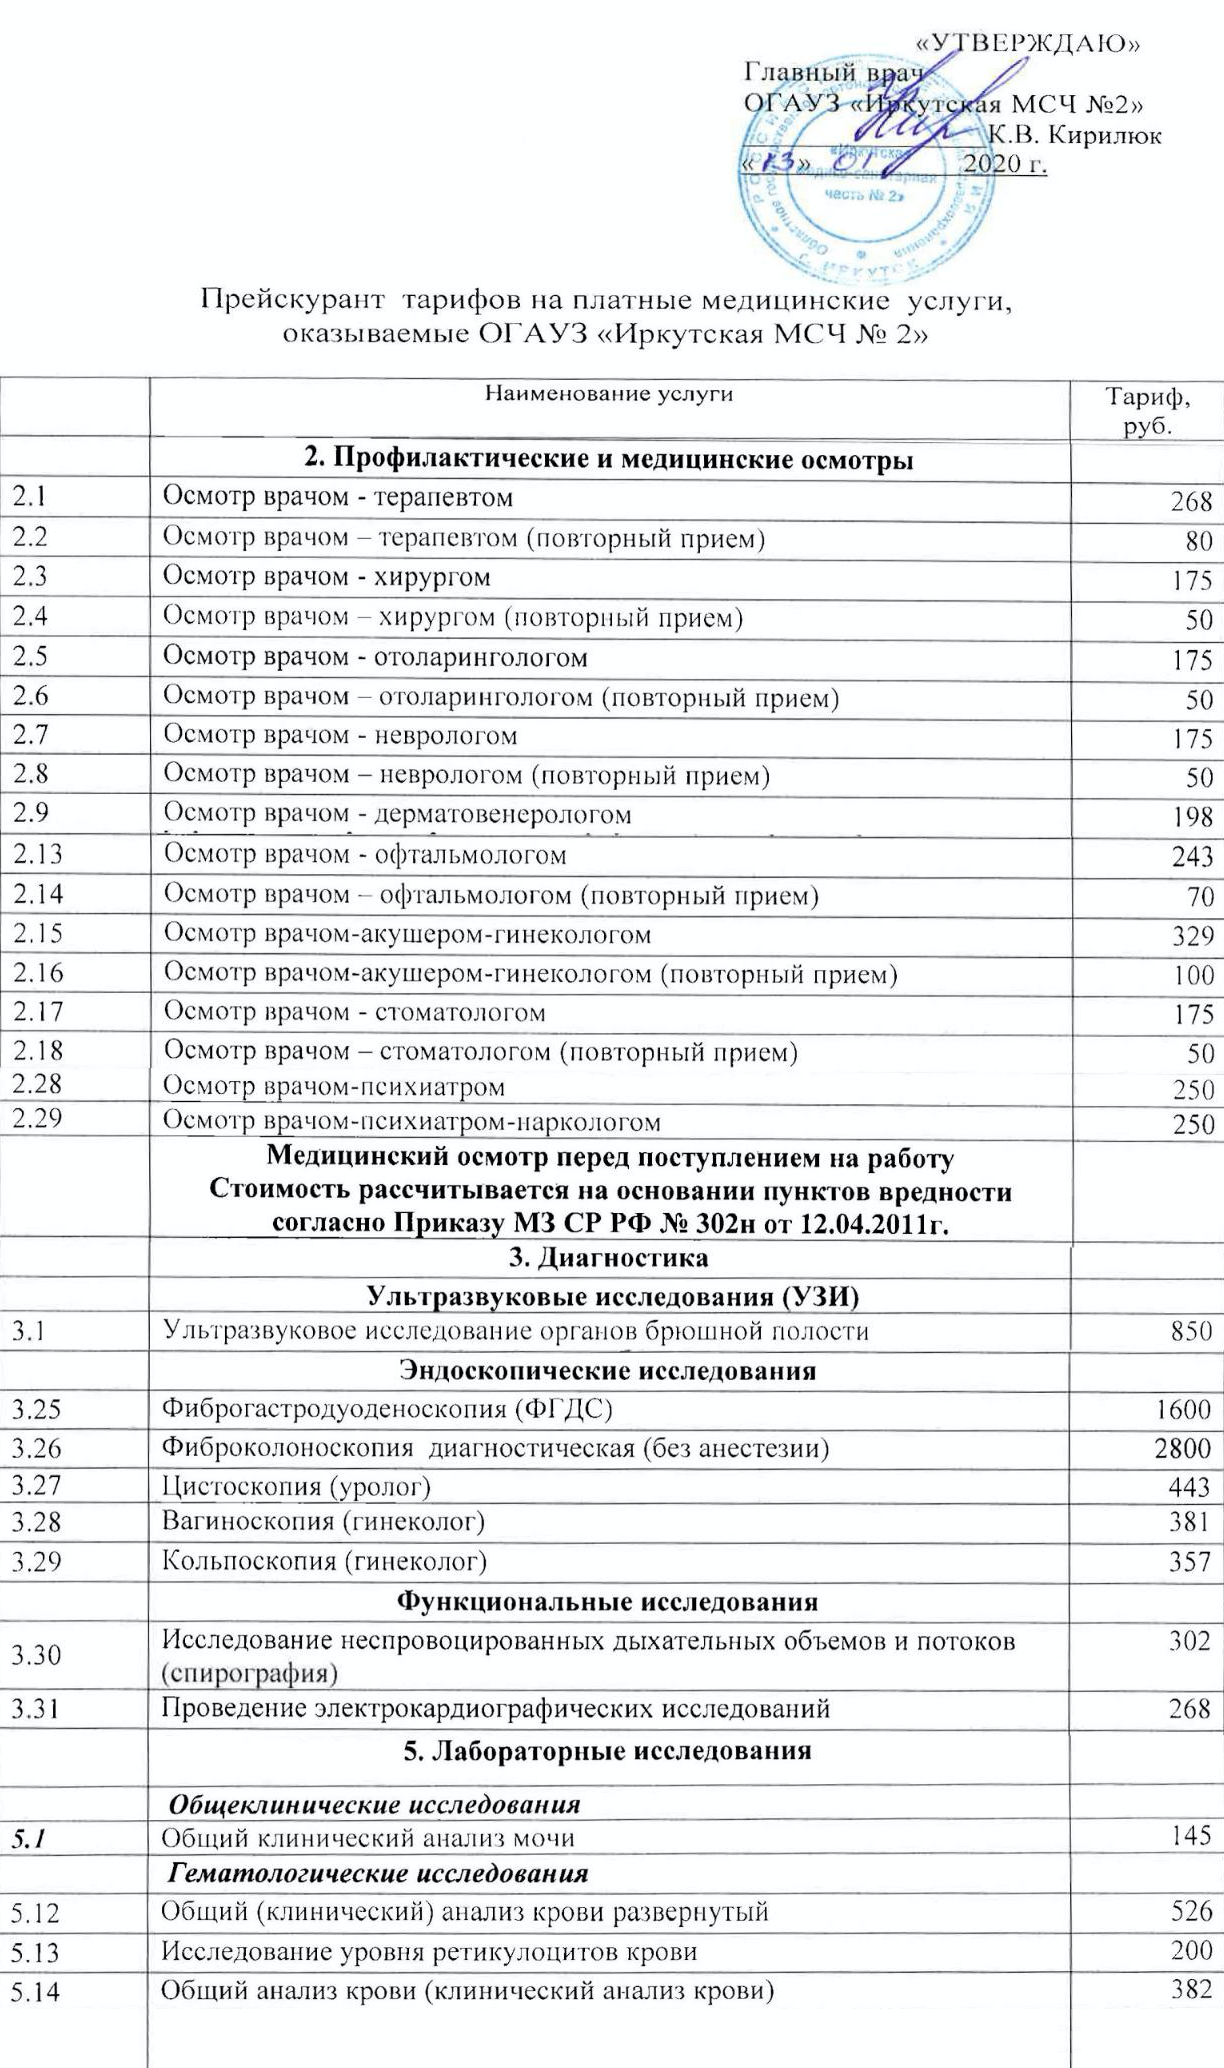 Прайс-лист медицинских услуг Иркутской медико-санитарной части